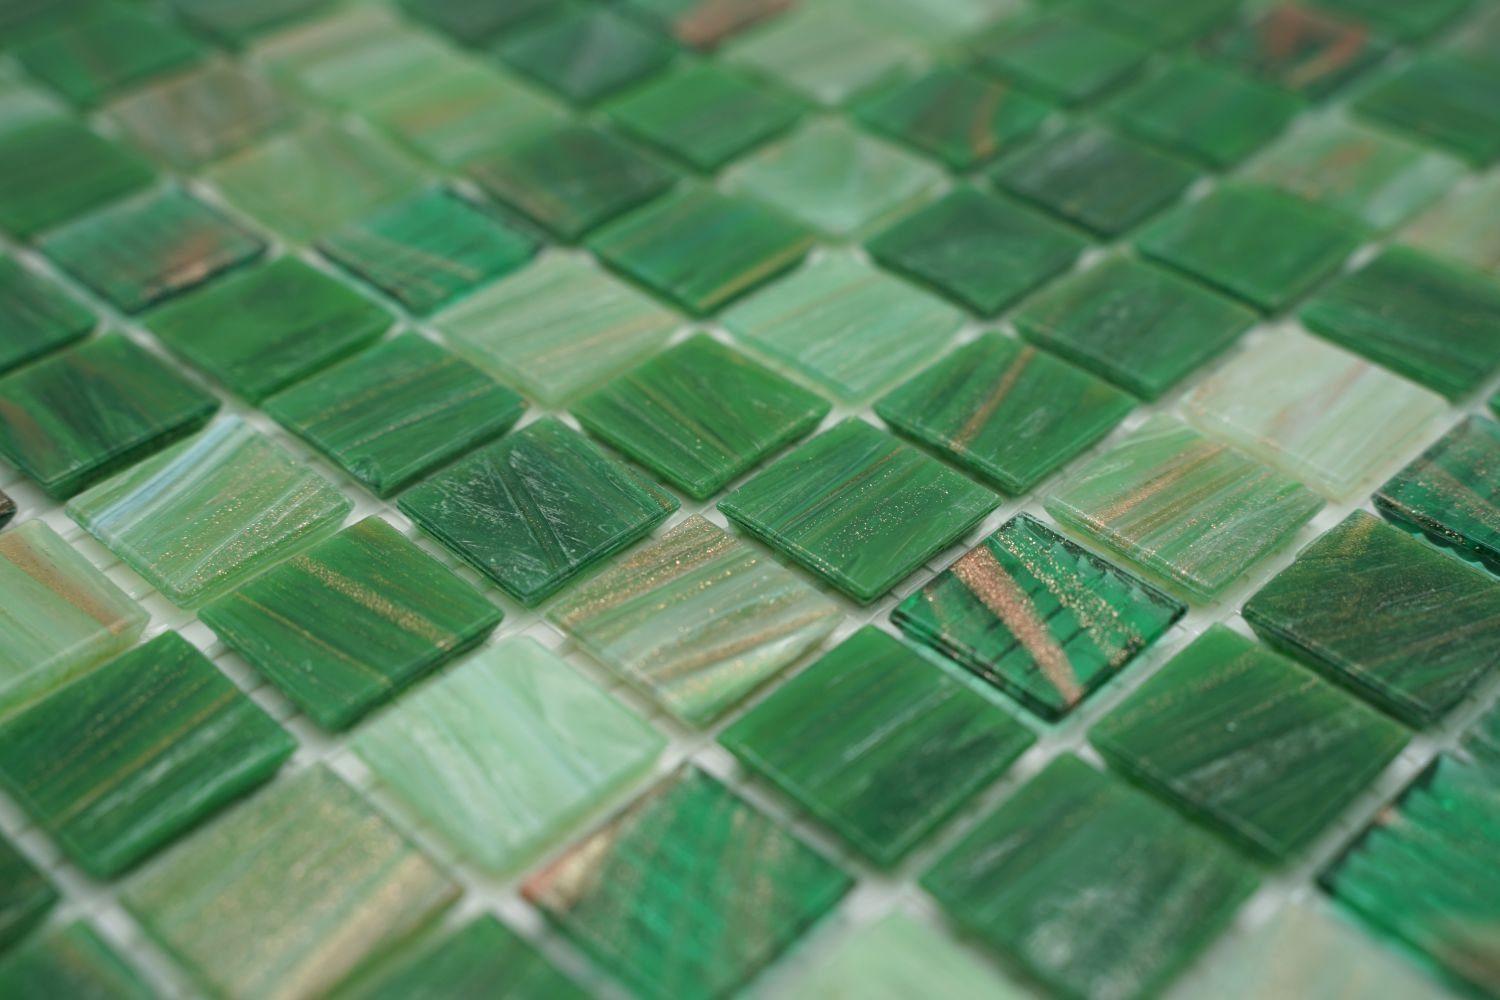 glänzend 10 Glasmosaik Bodenfliese Matten grün Mosani / Mosaikfliesen